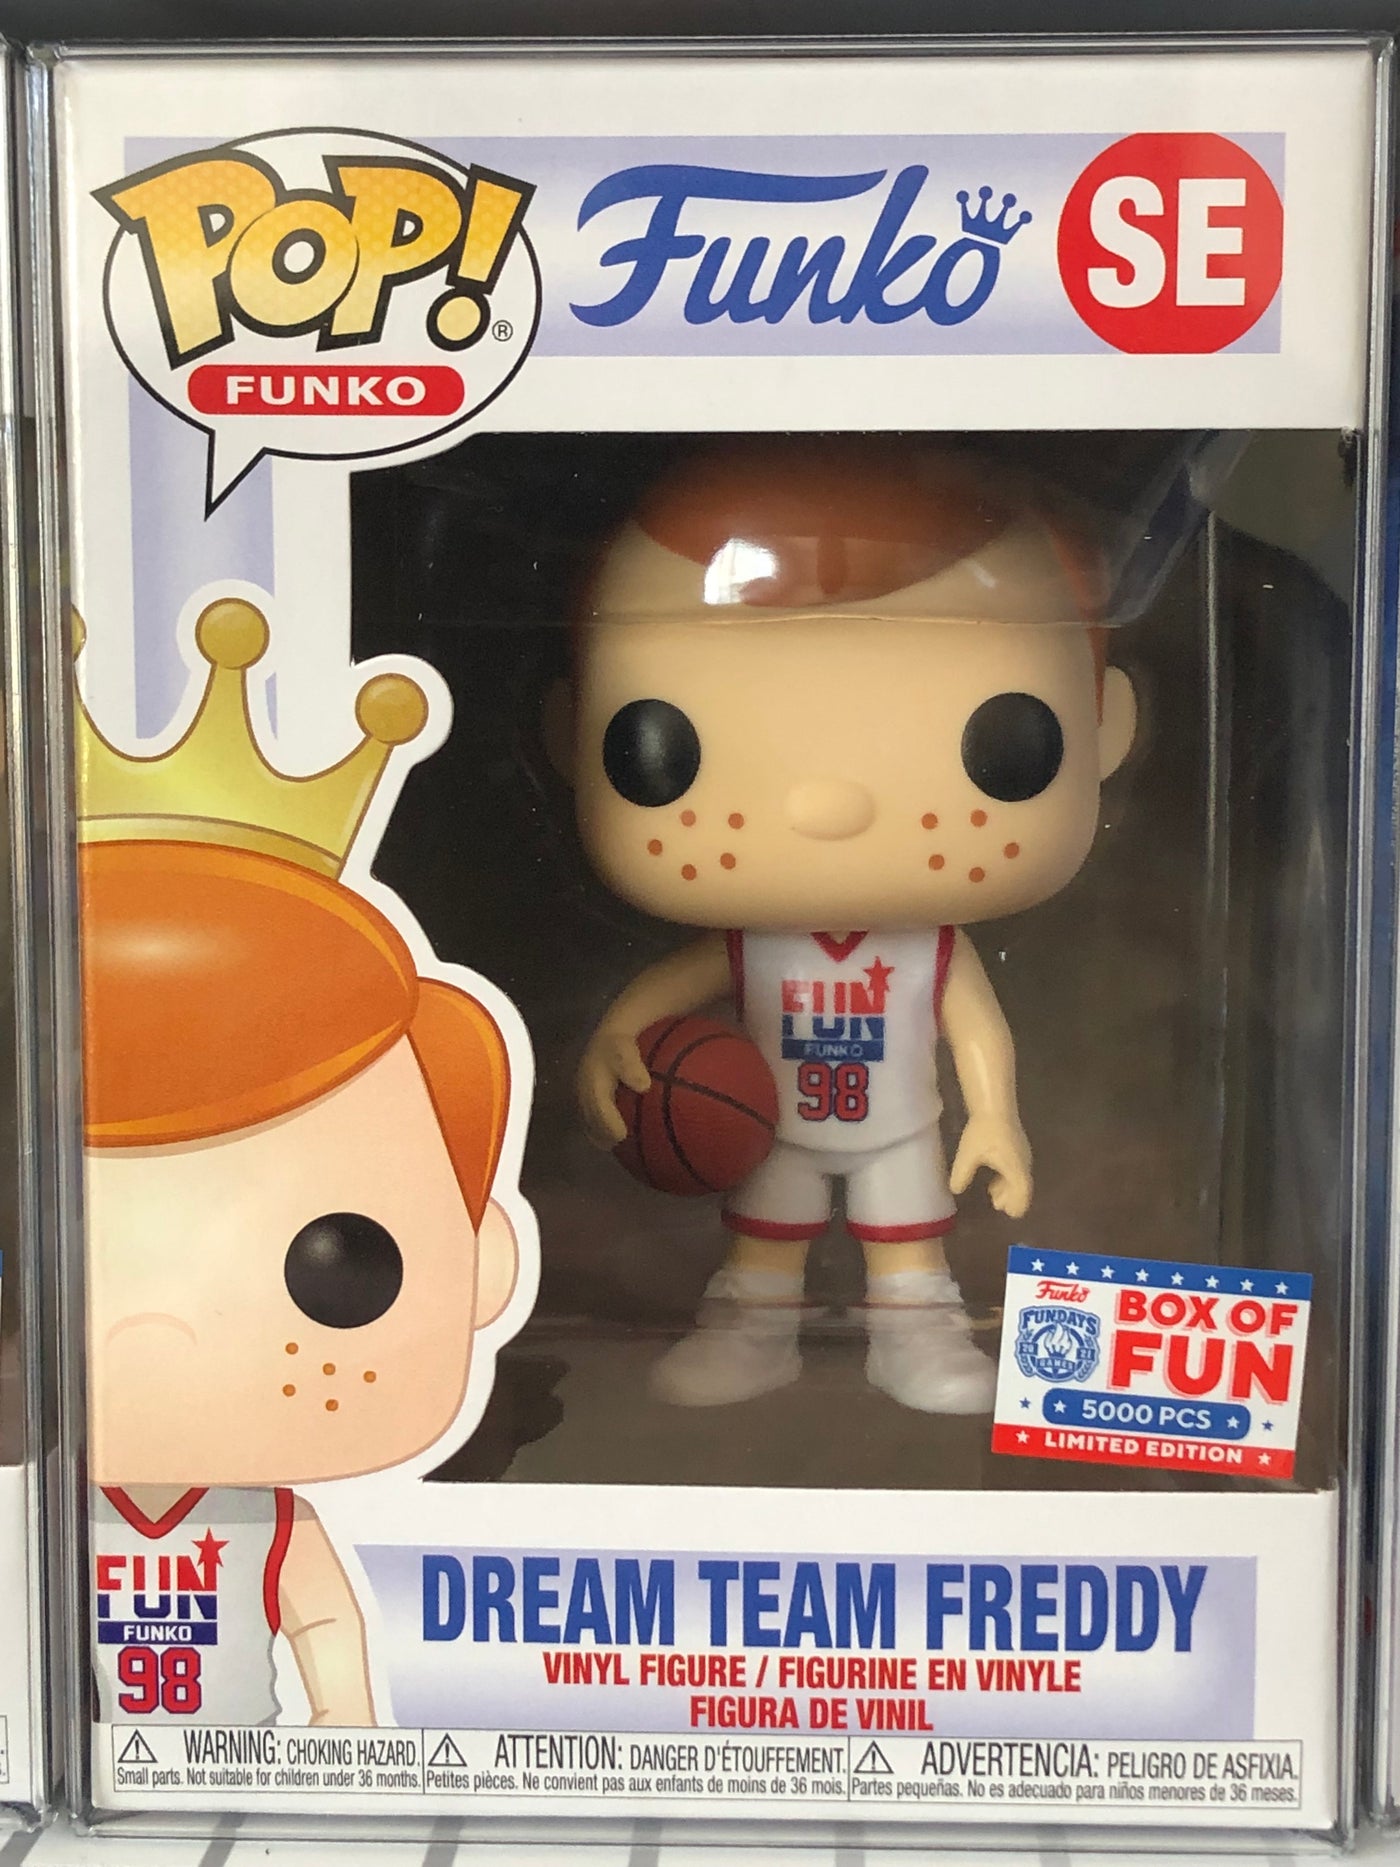 Dream Team Freddy Funko (Box of Fun) LE 5000